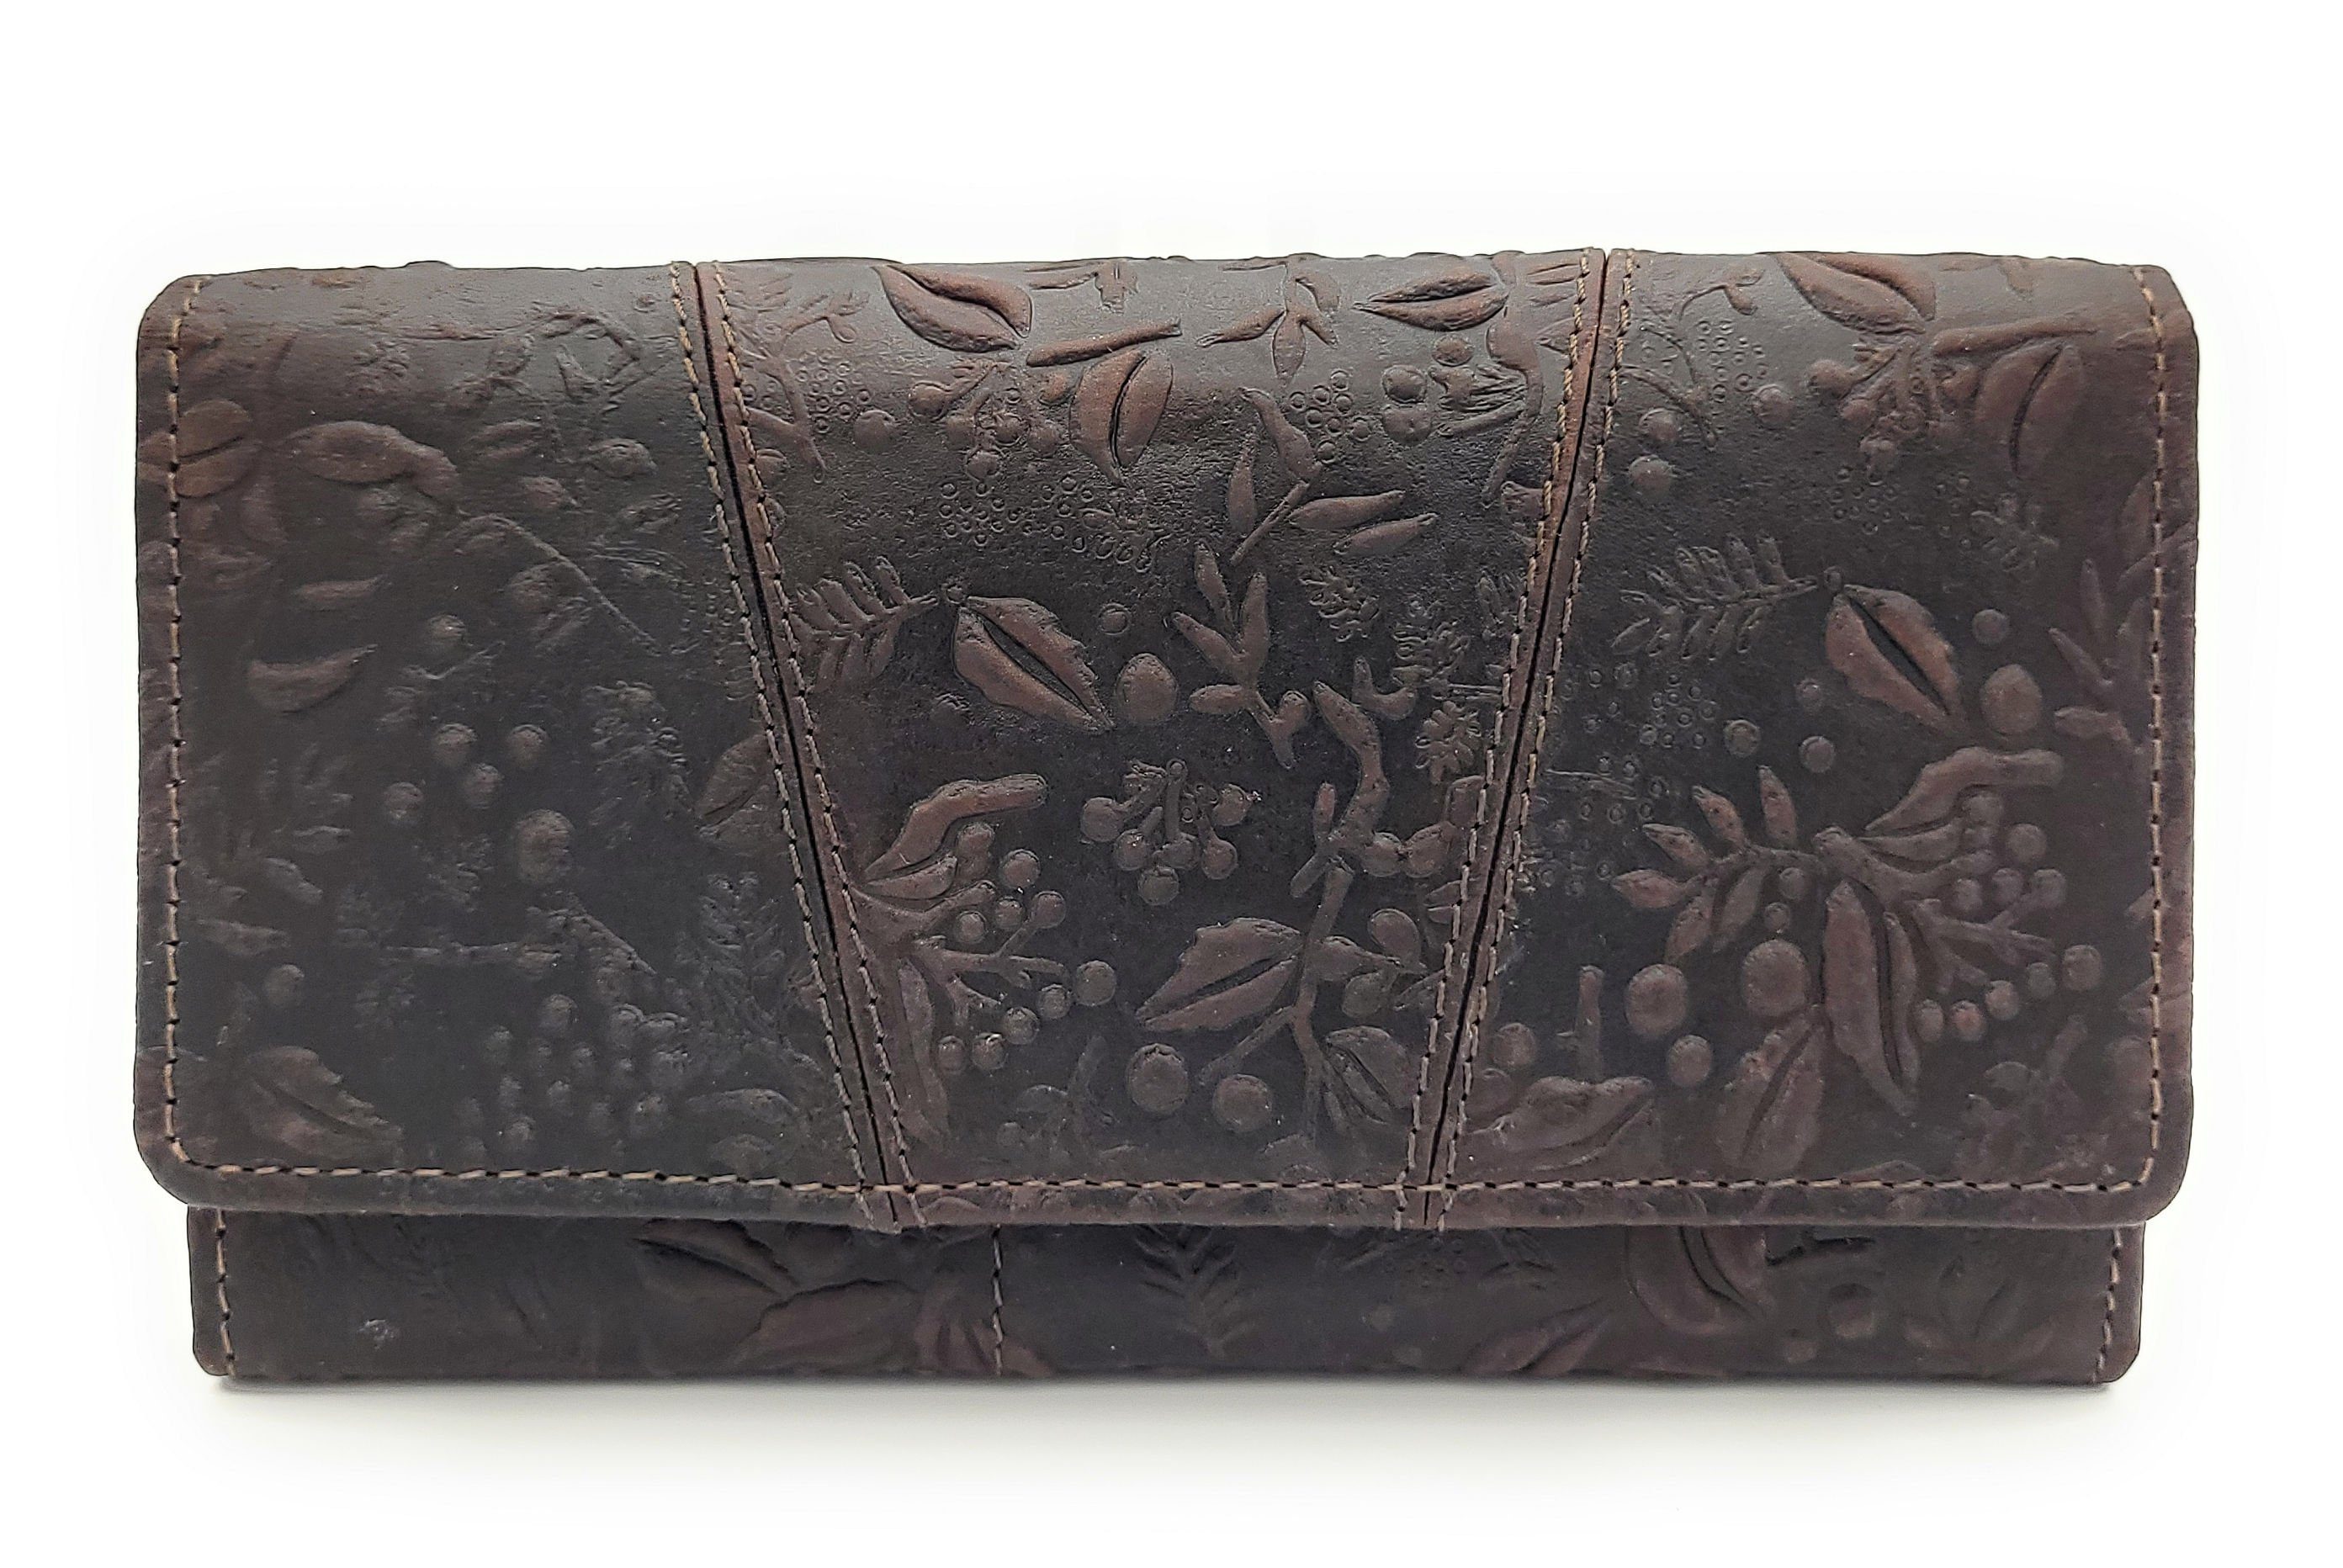 Hill Burry Geldbörse echt Leder Damen Portemonnaie mit RFID Schutz, mit eleganter, floraler Prägung